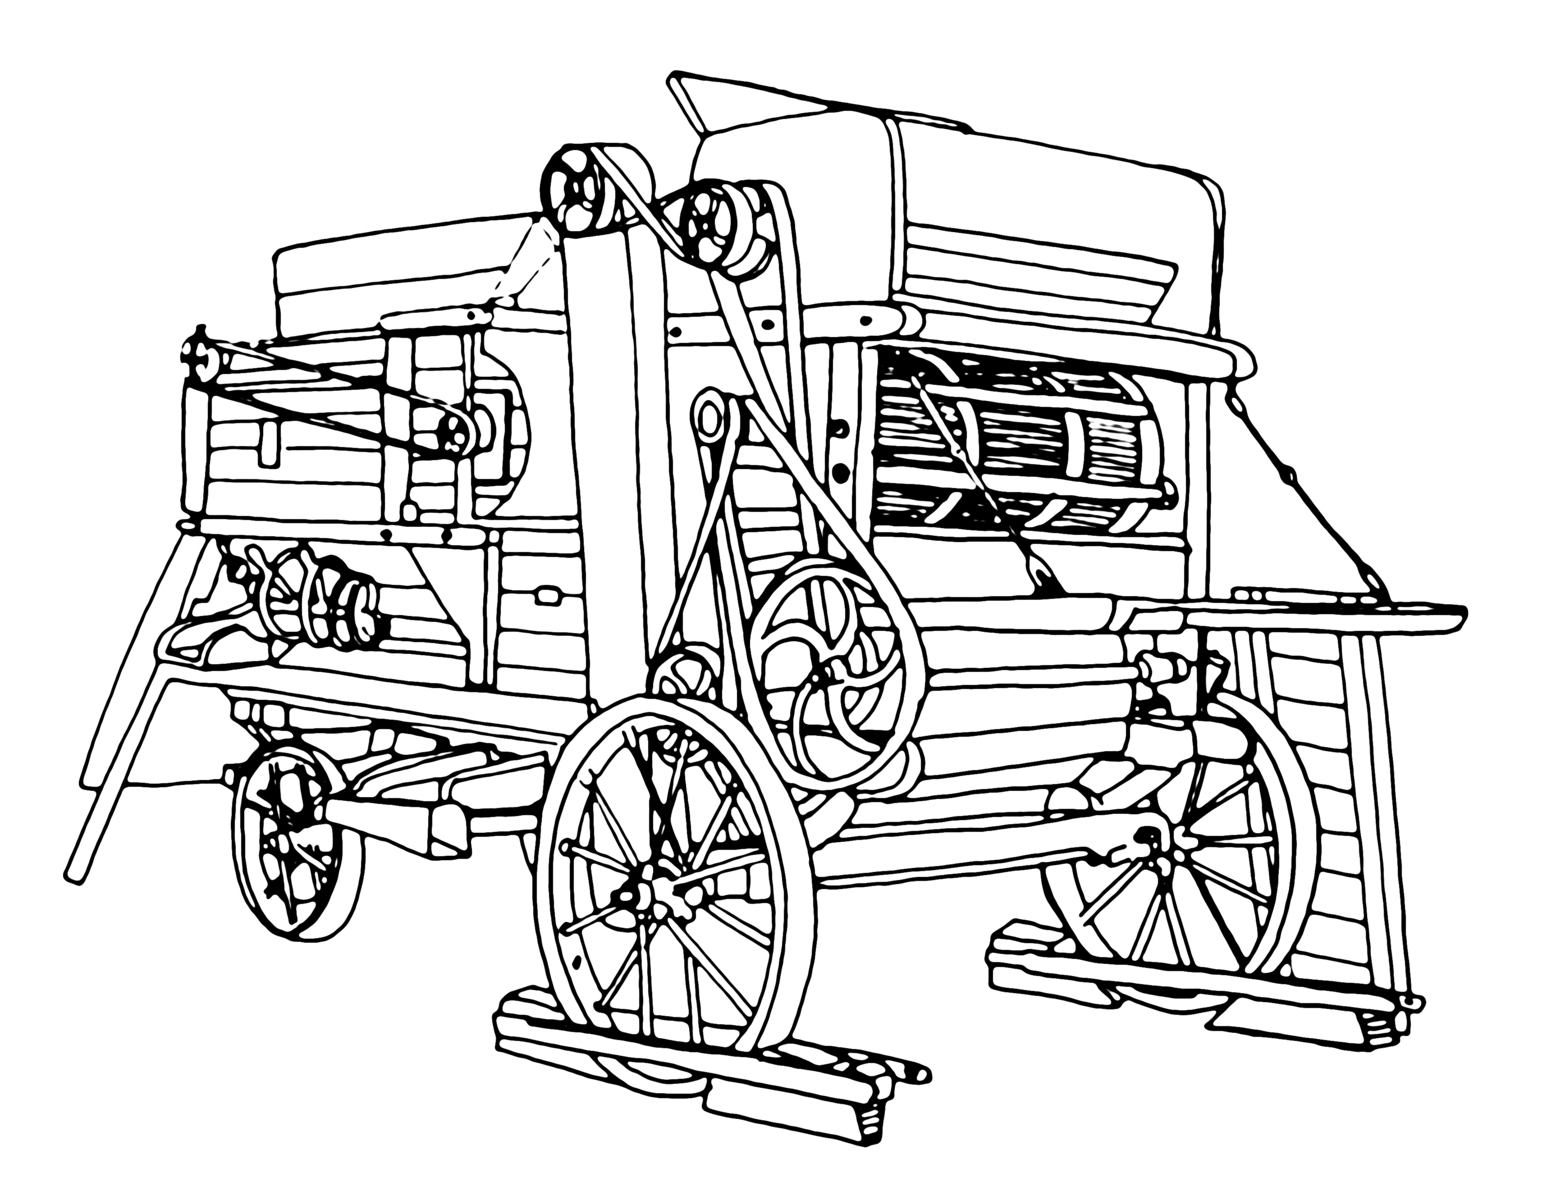 Vylušťovač jetele, kresba z Encyklopedie strojů a nářadí